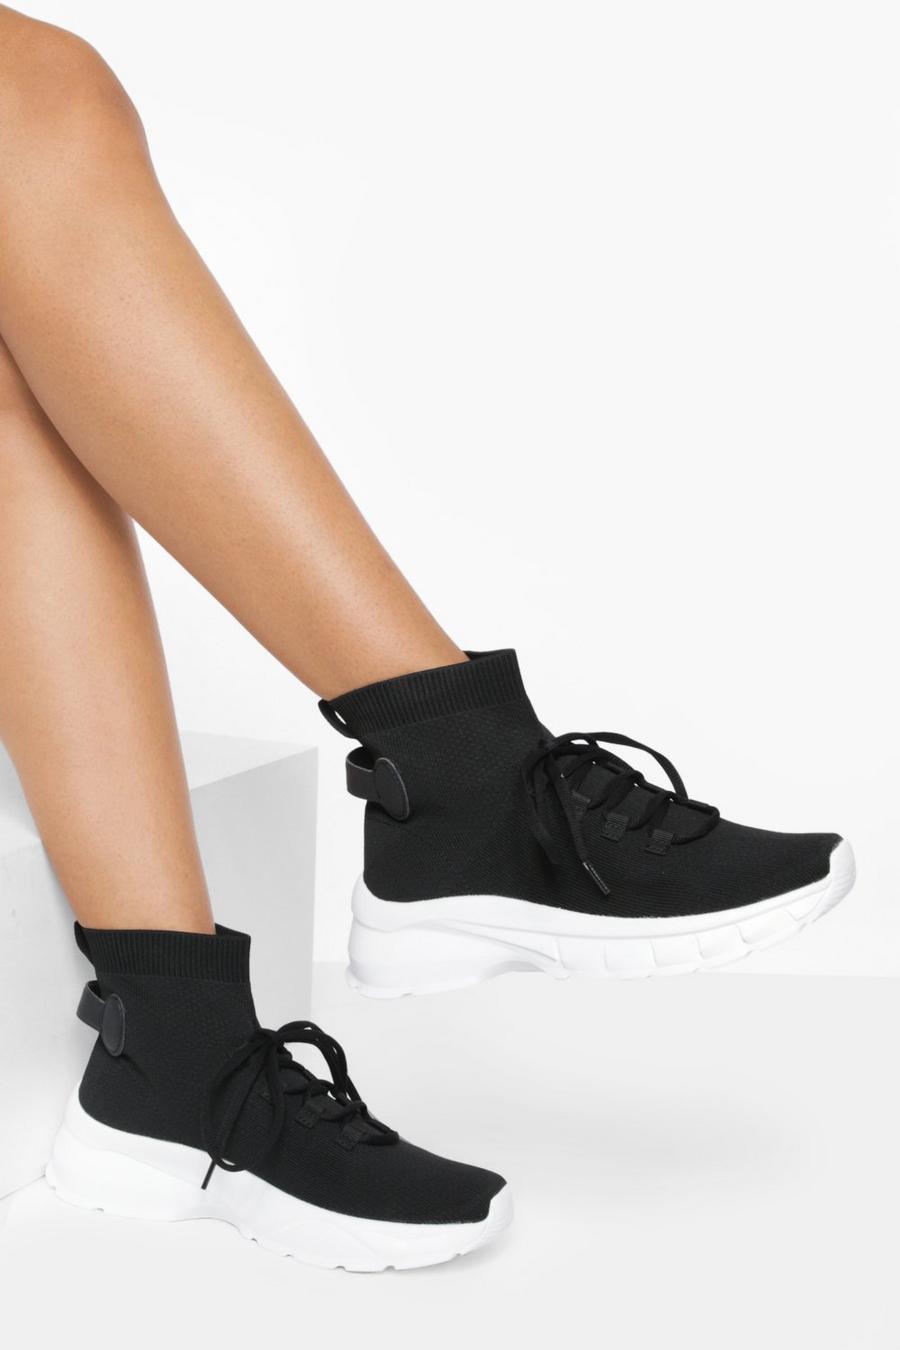 Sneaker a calza con lacci, Black nero